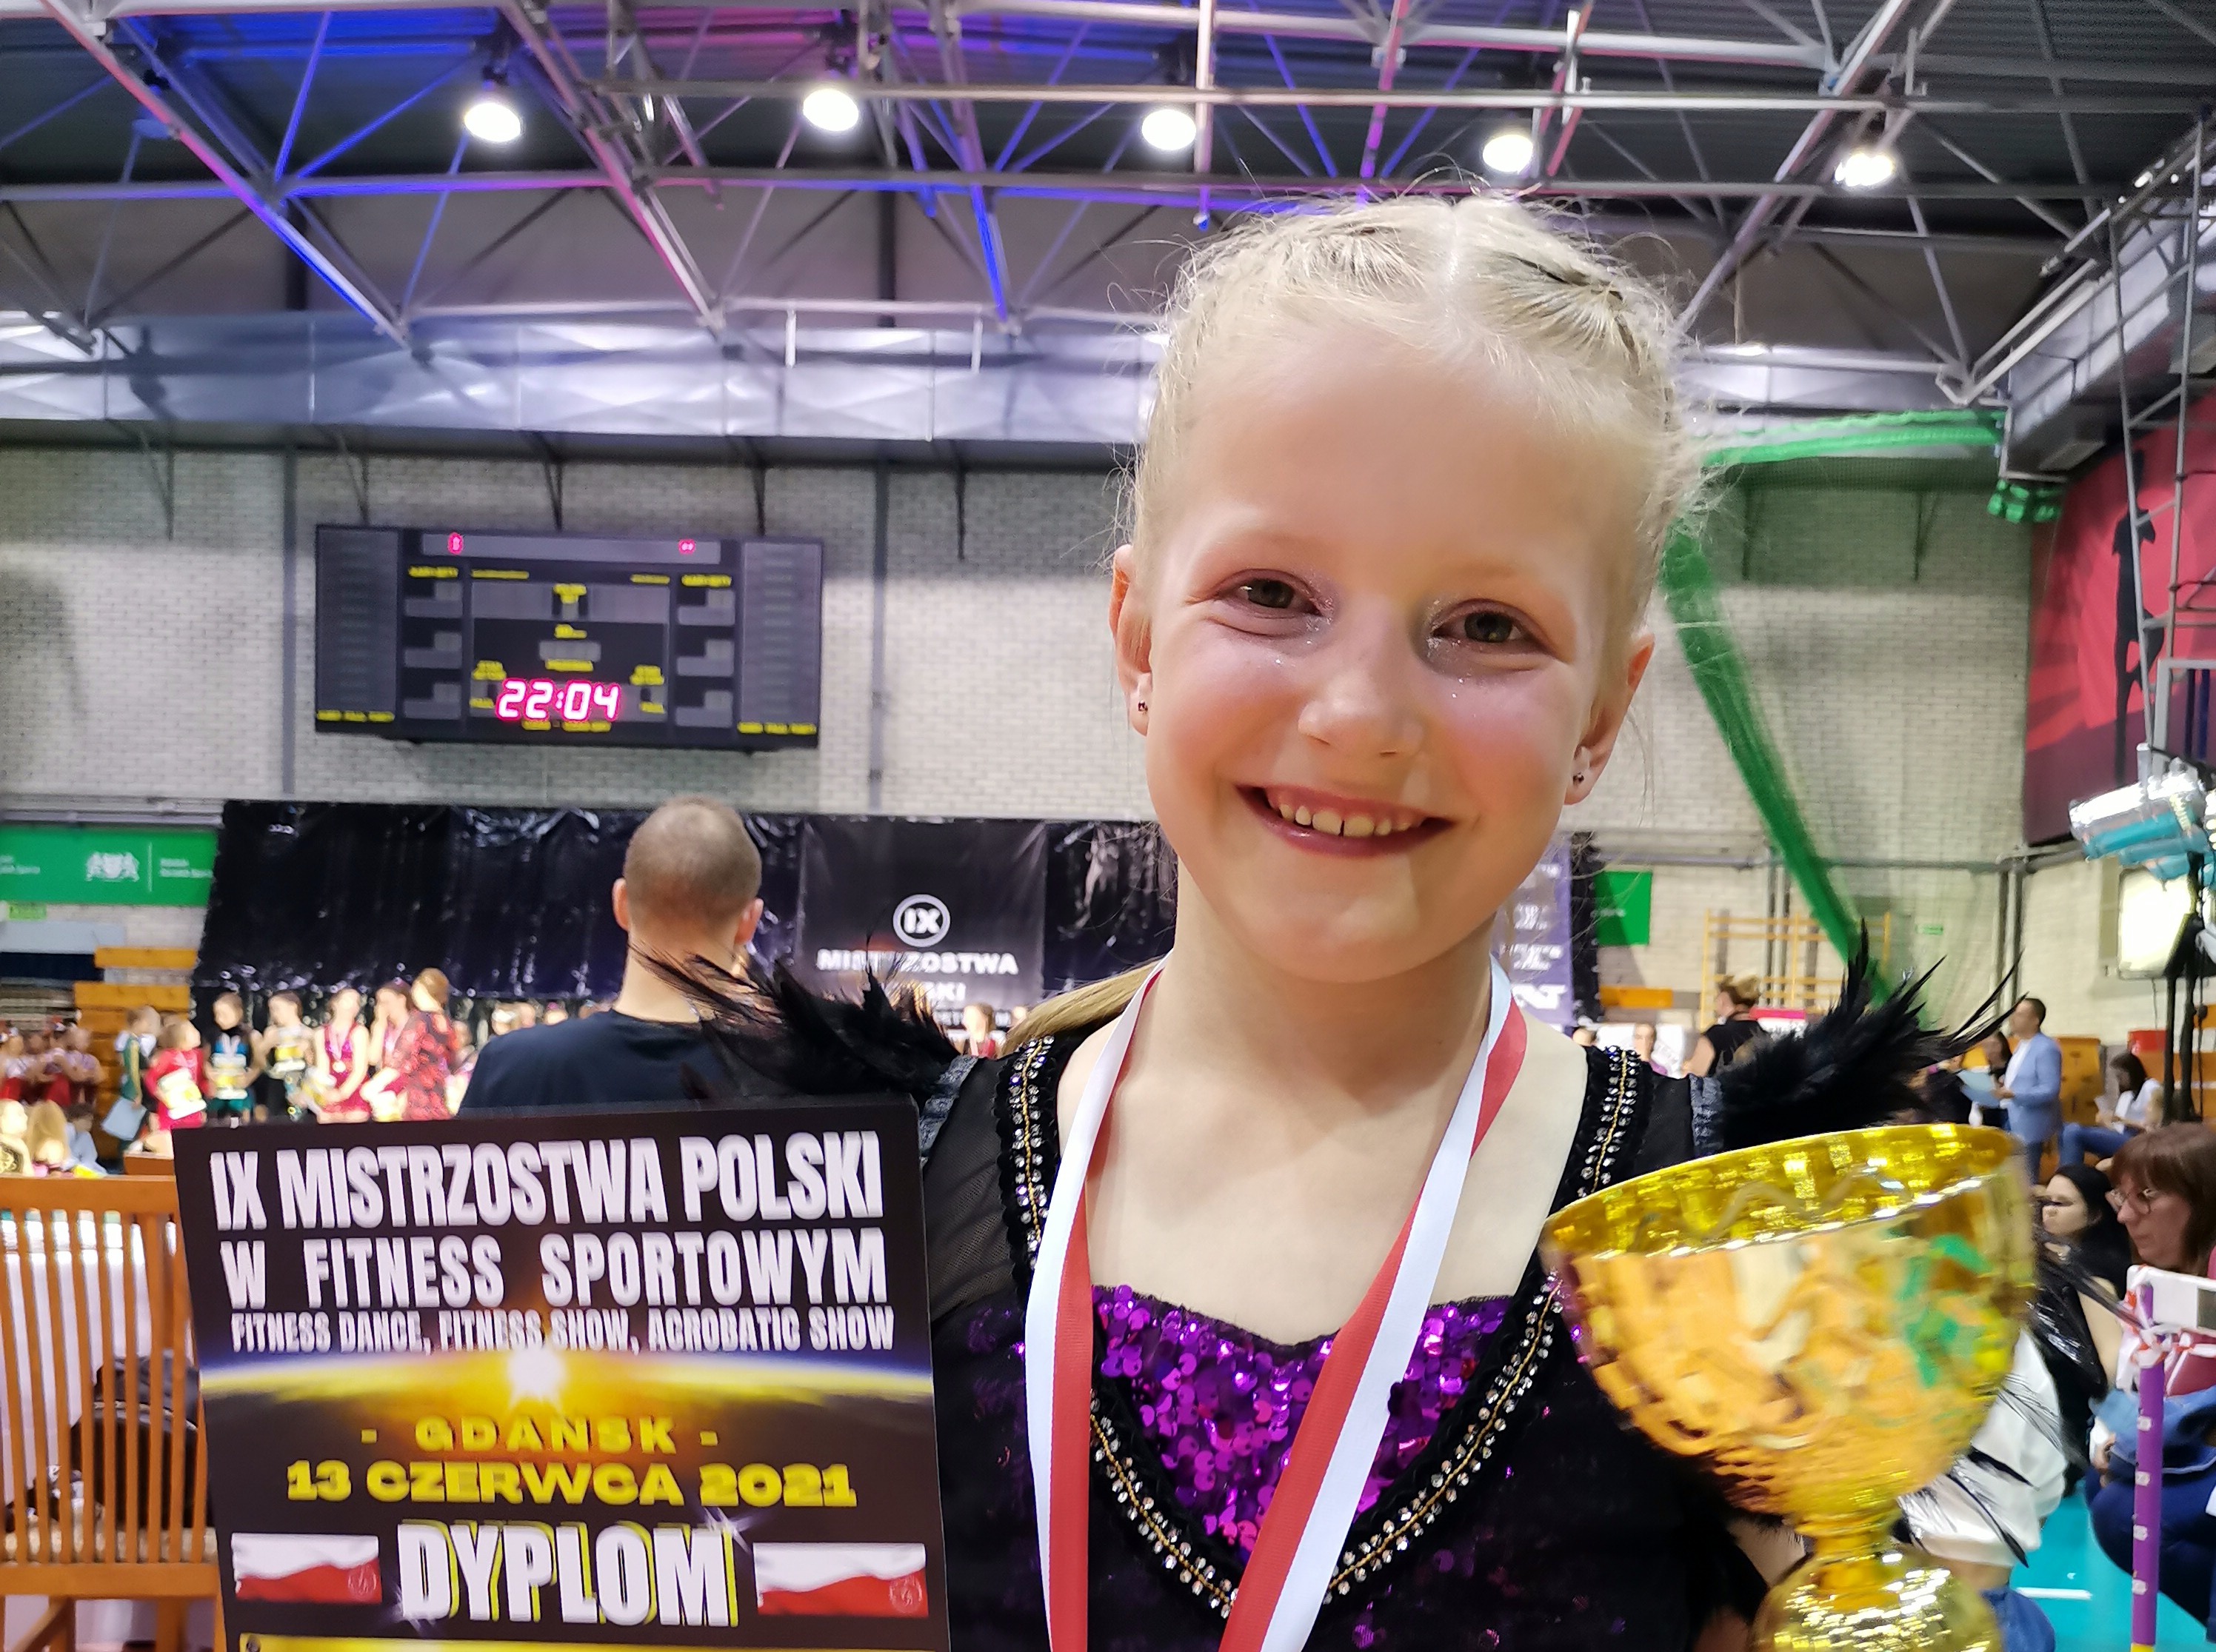 8-letnia Liwia Posadzka na podium na Mistrzostwach Polski w Fitnessie sportowym [ZDJĘCIA] - Zdjęcie główne